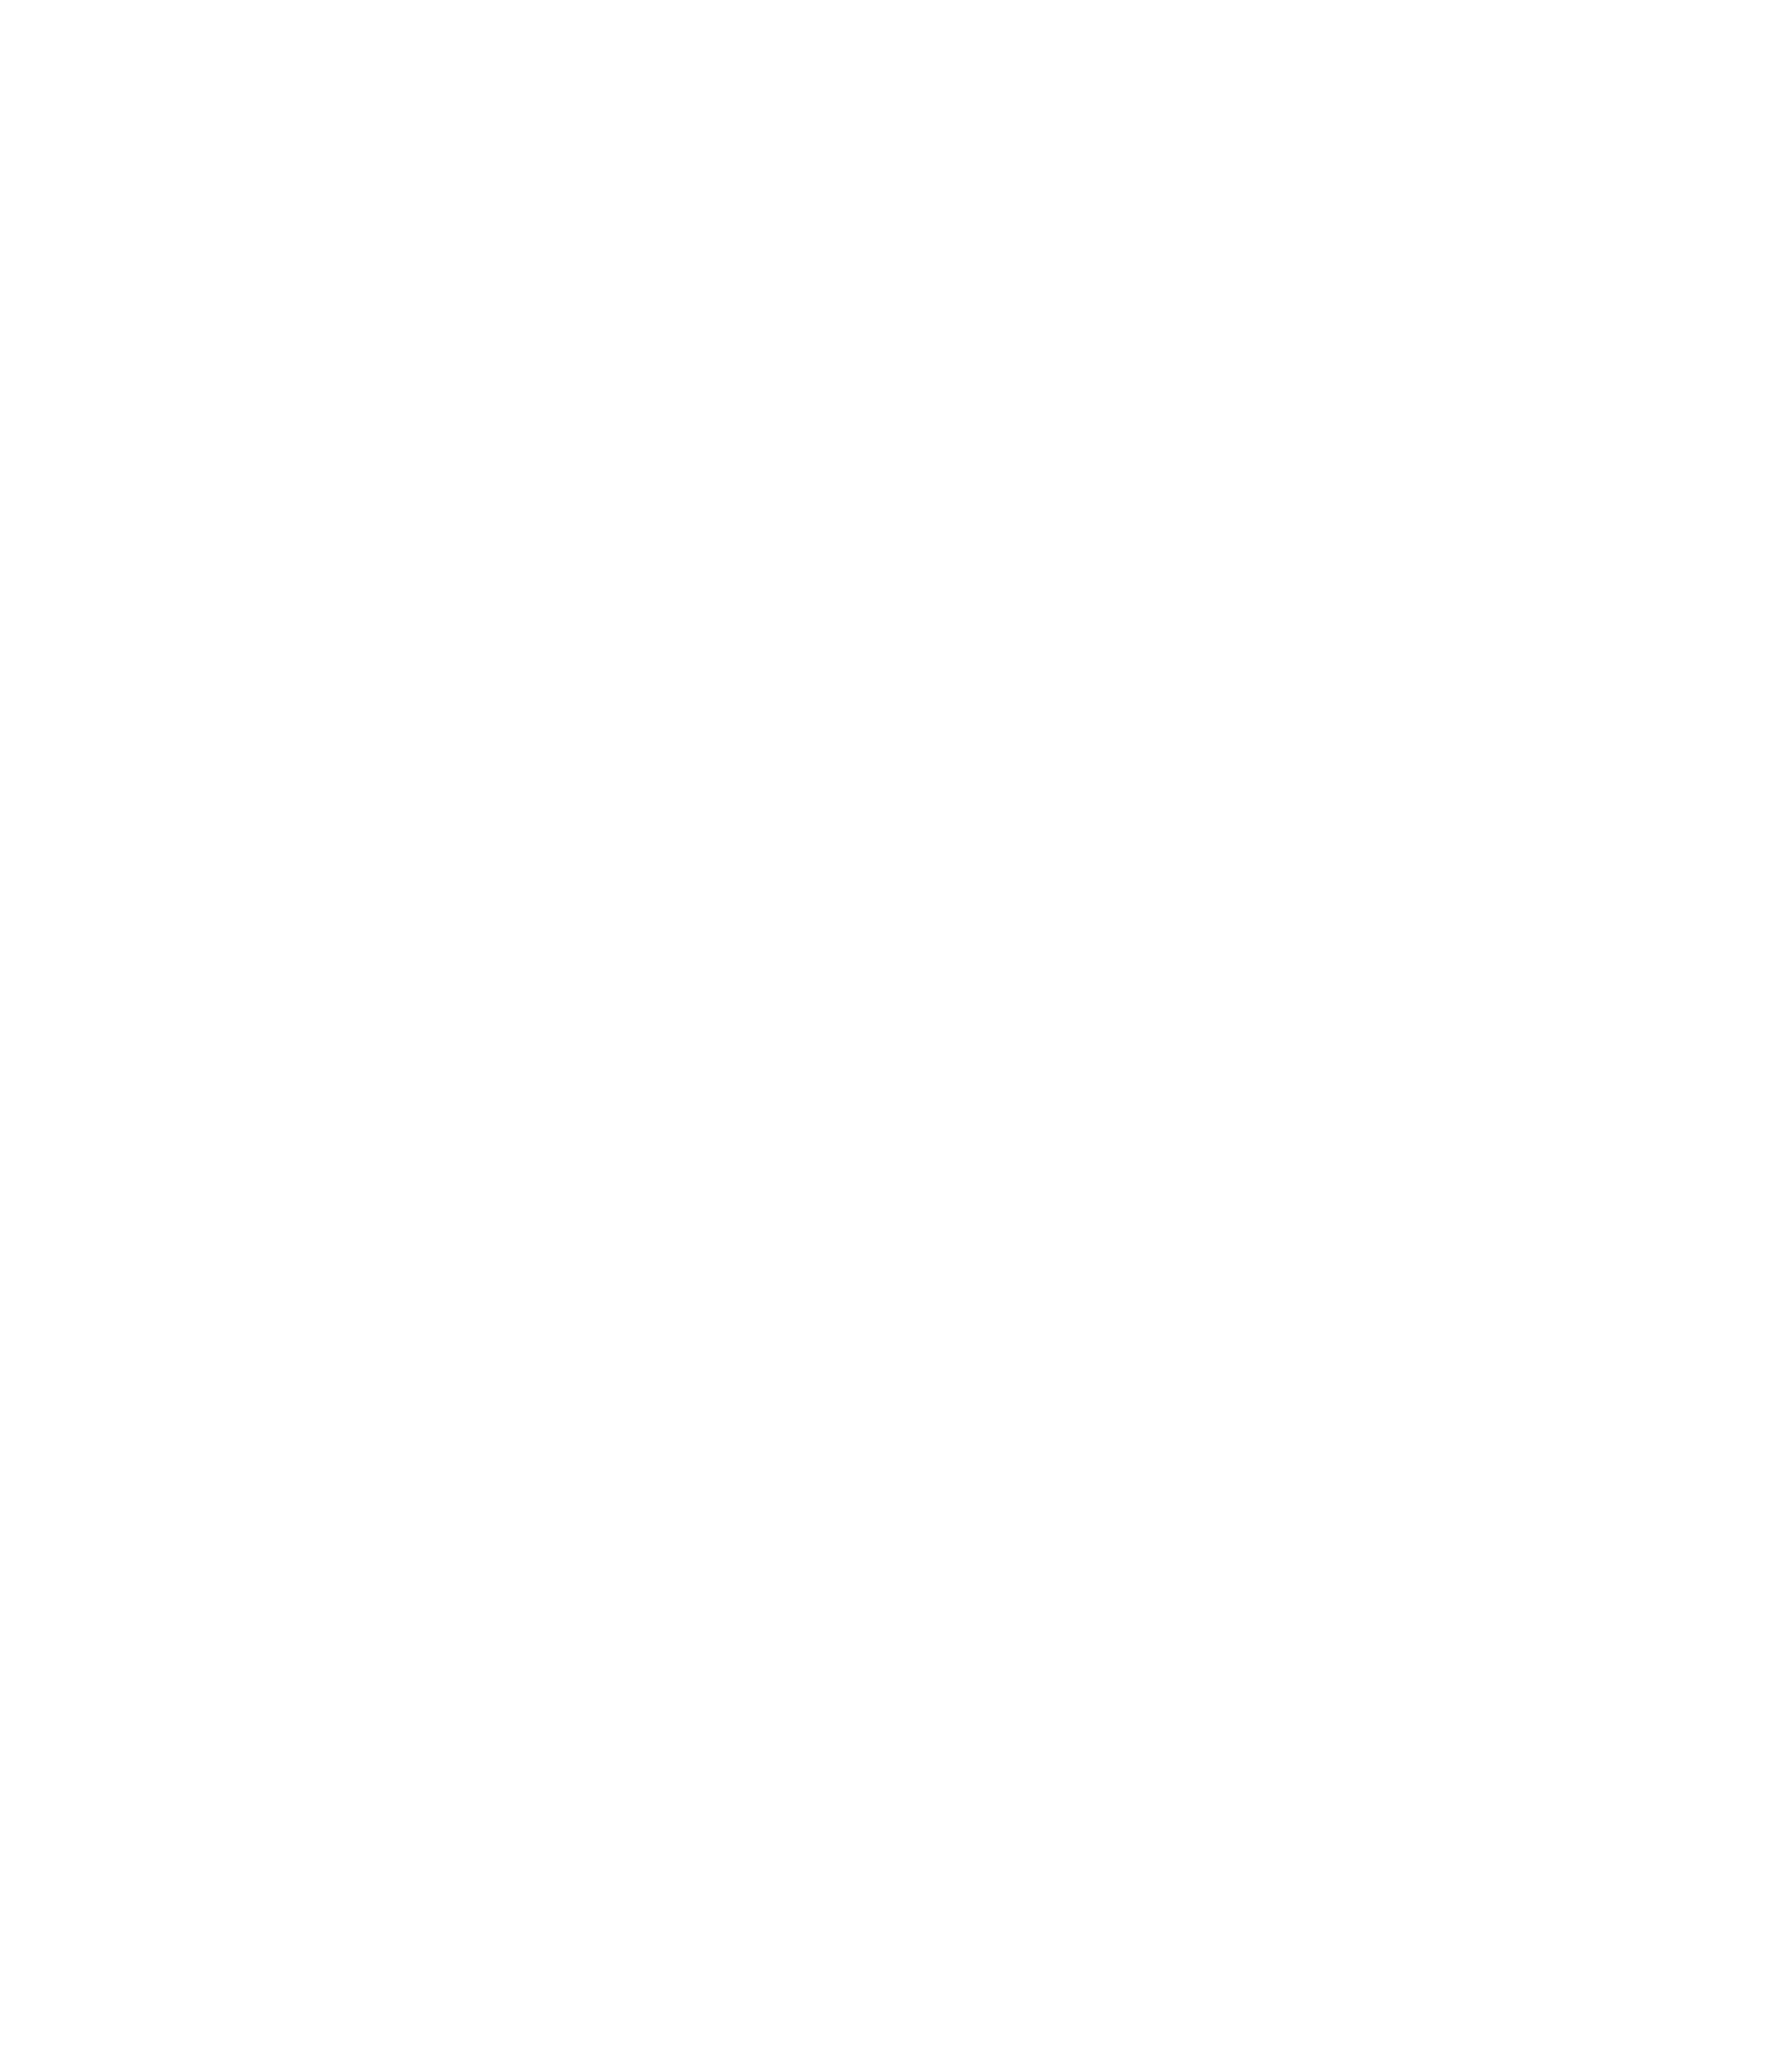 choicecbdplus.com